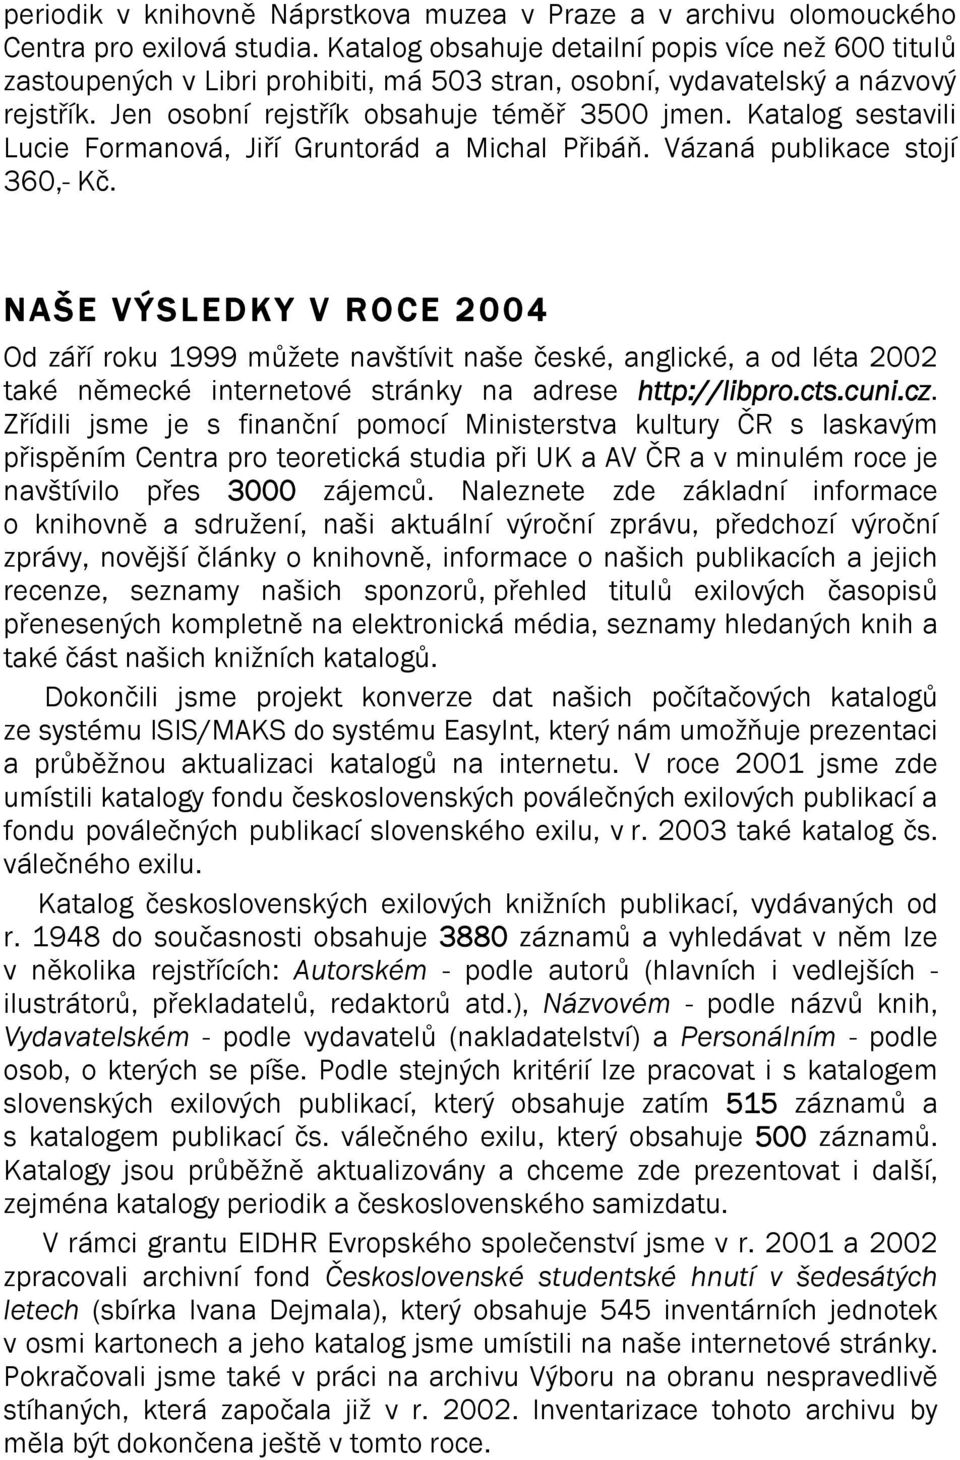 Katalog sestavili Lucie Formanová, Jiří Gruntorád a Michal Přibáň. Vázaná publikace stojí 360,- Kč.